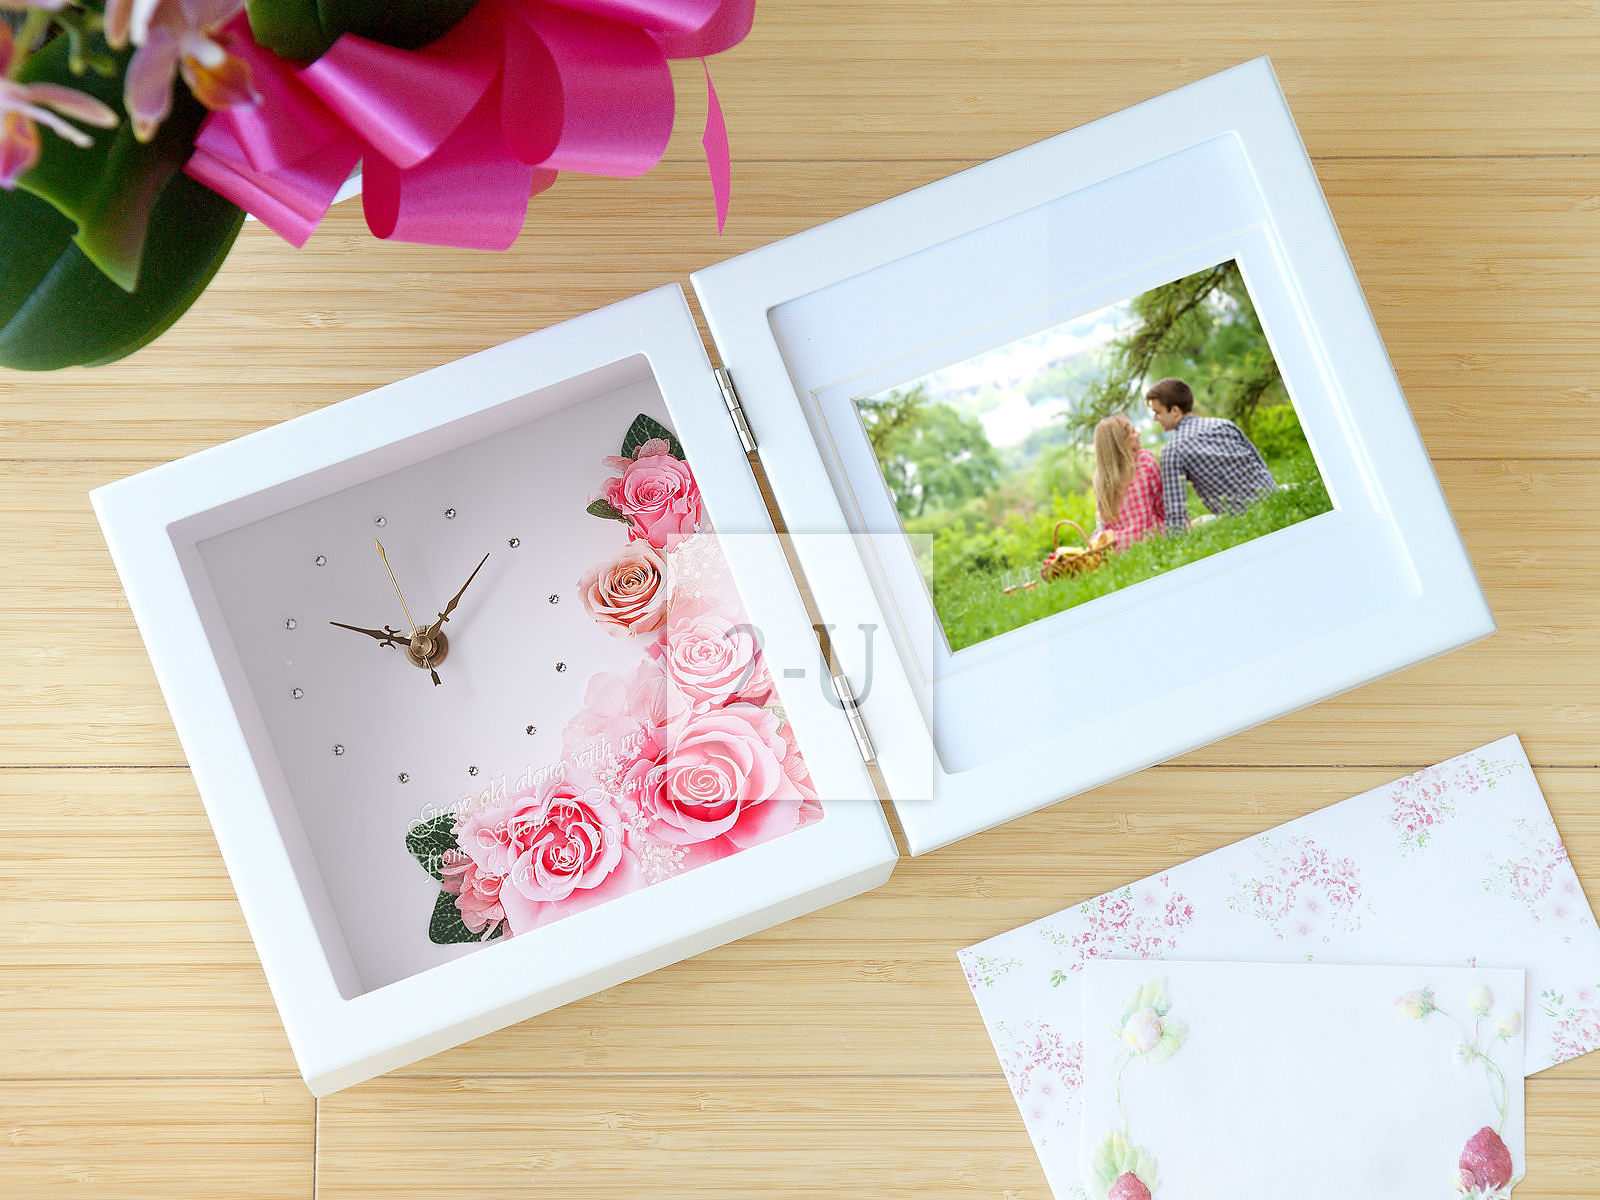 作為求婚的迴禮，送一個帶照片和訂婚紀唸日期的CT觸媒倣真花相架